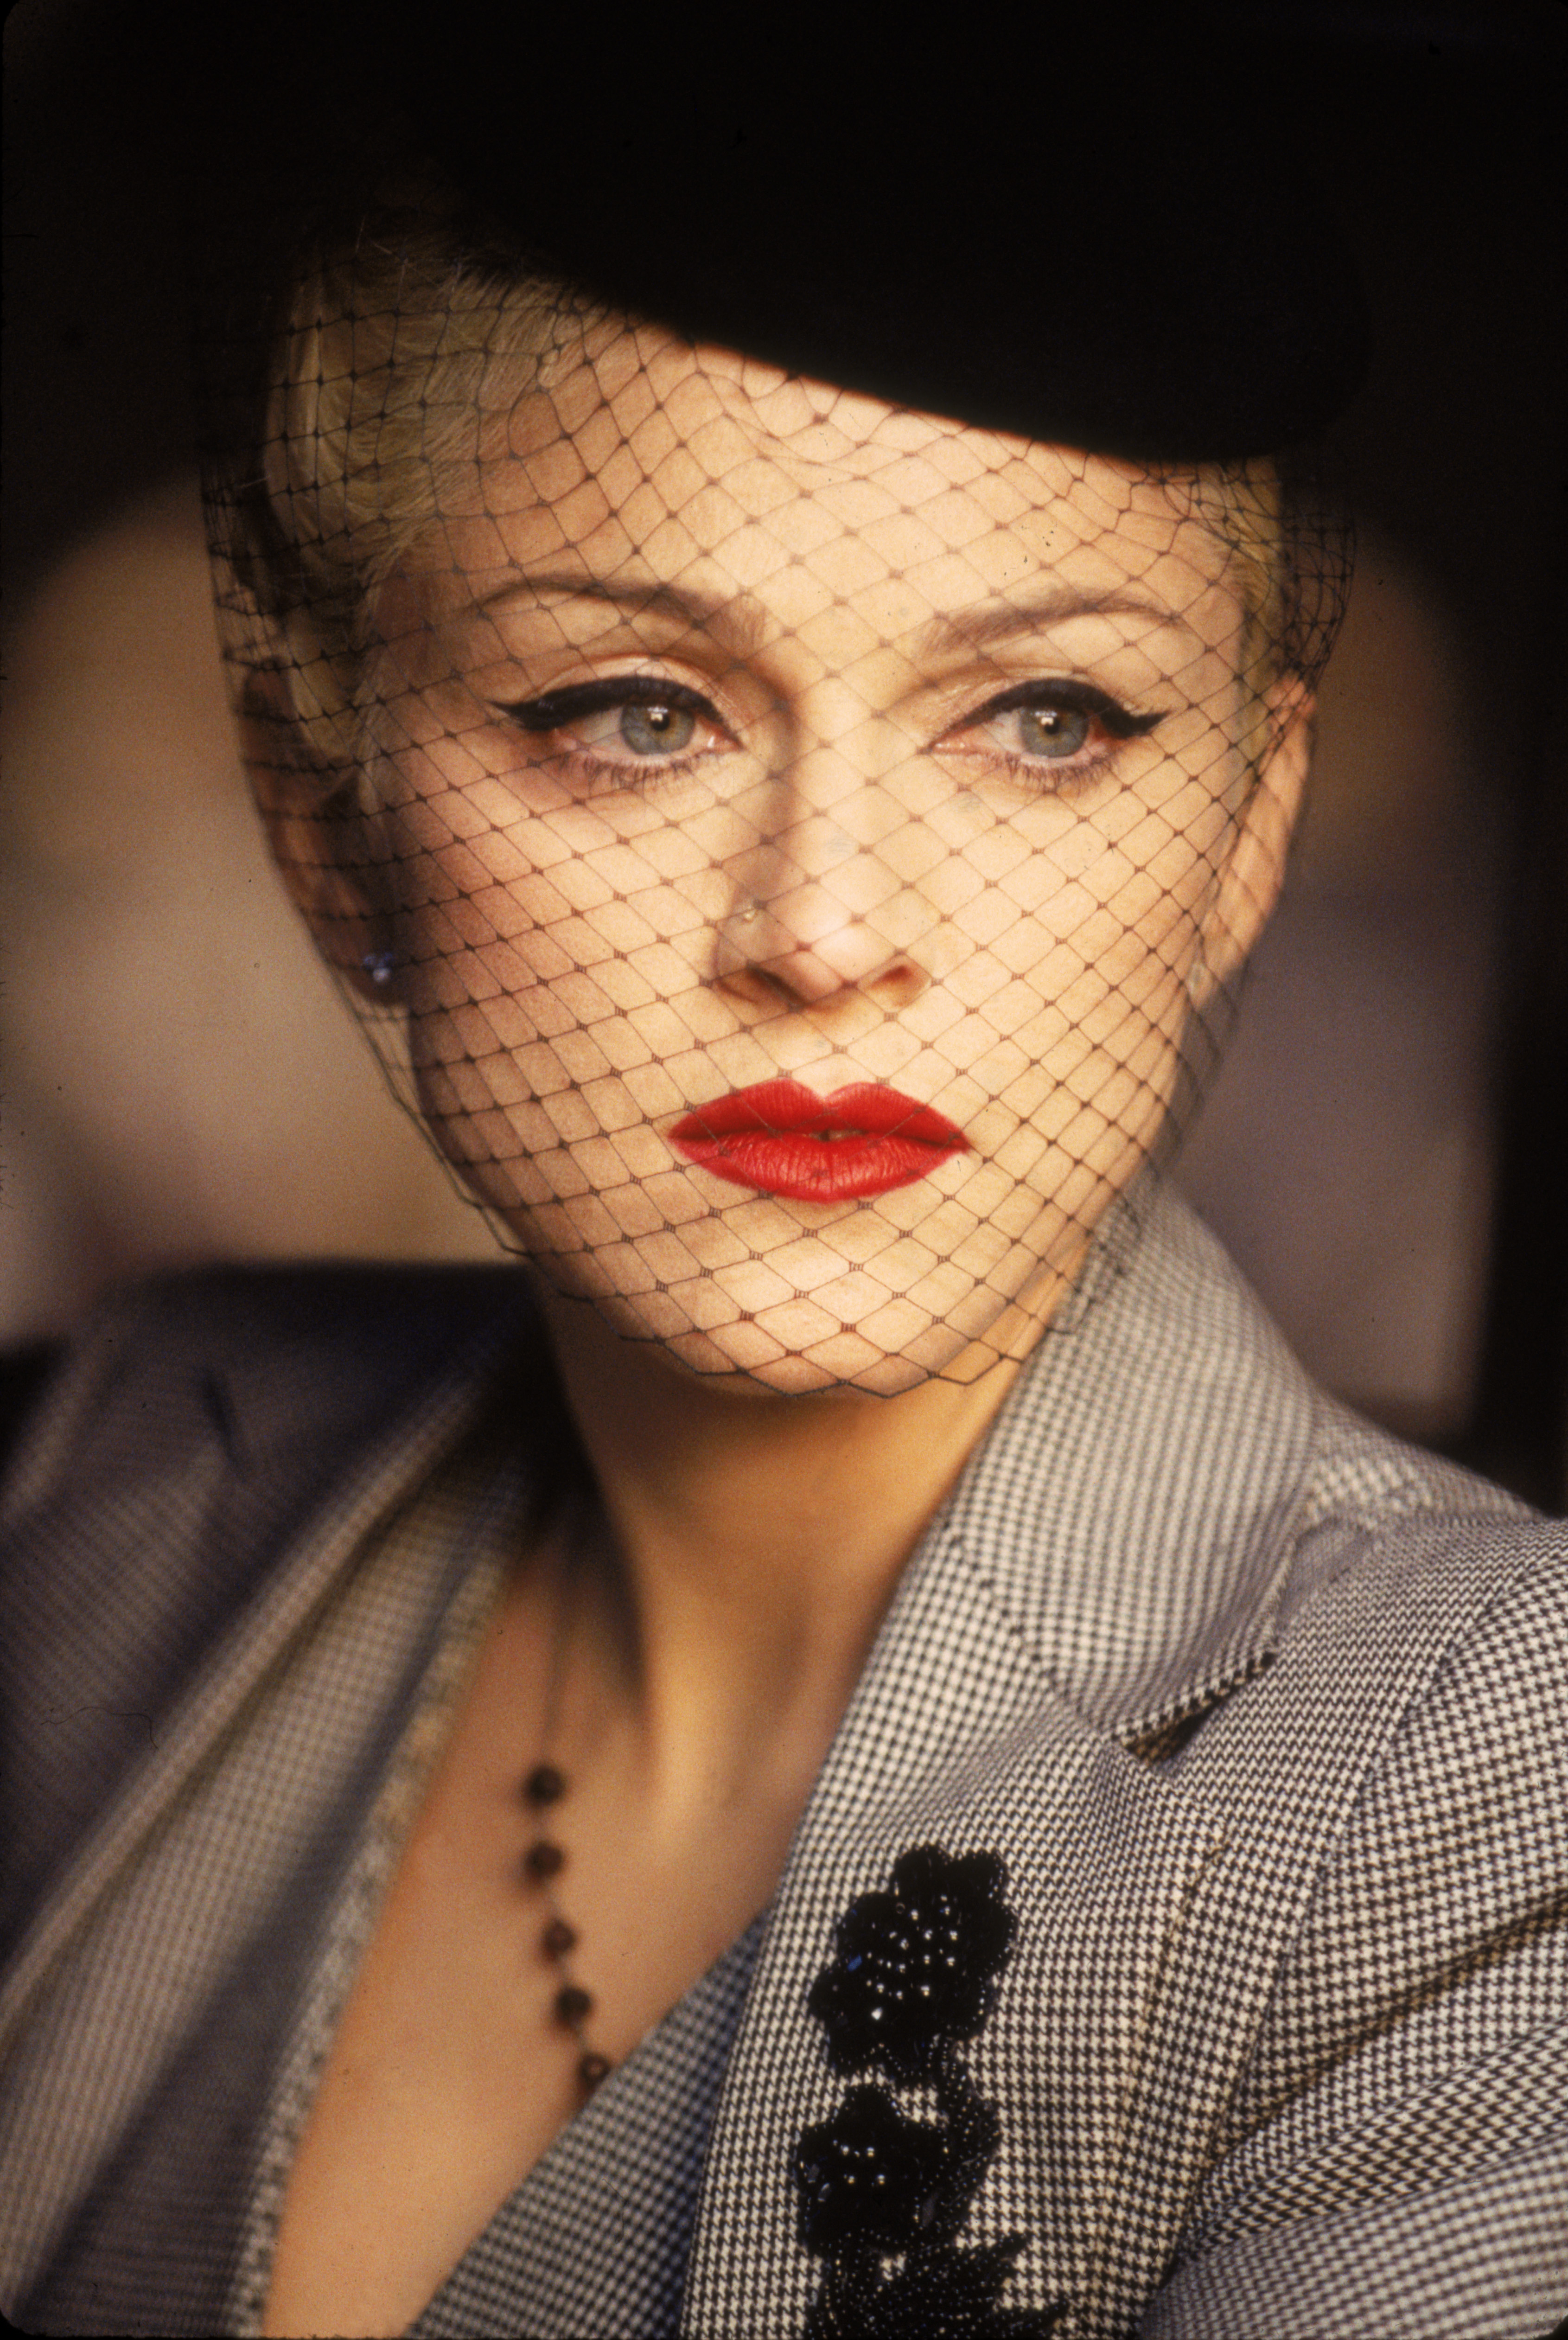 Madonna en un vídeo musical de su canción "Take A Bow" en 1994 | Fuente: Getty Images